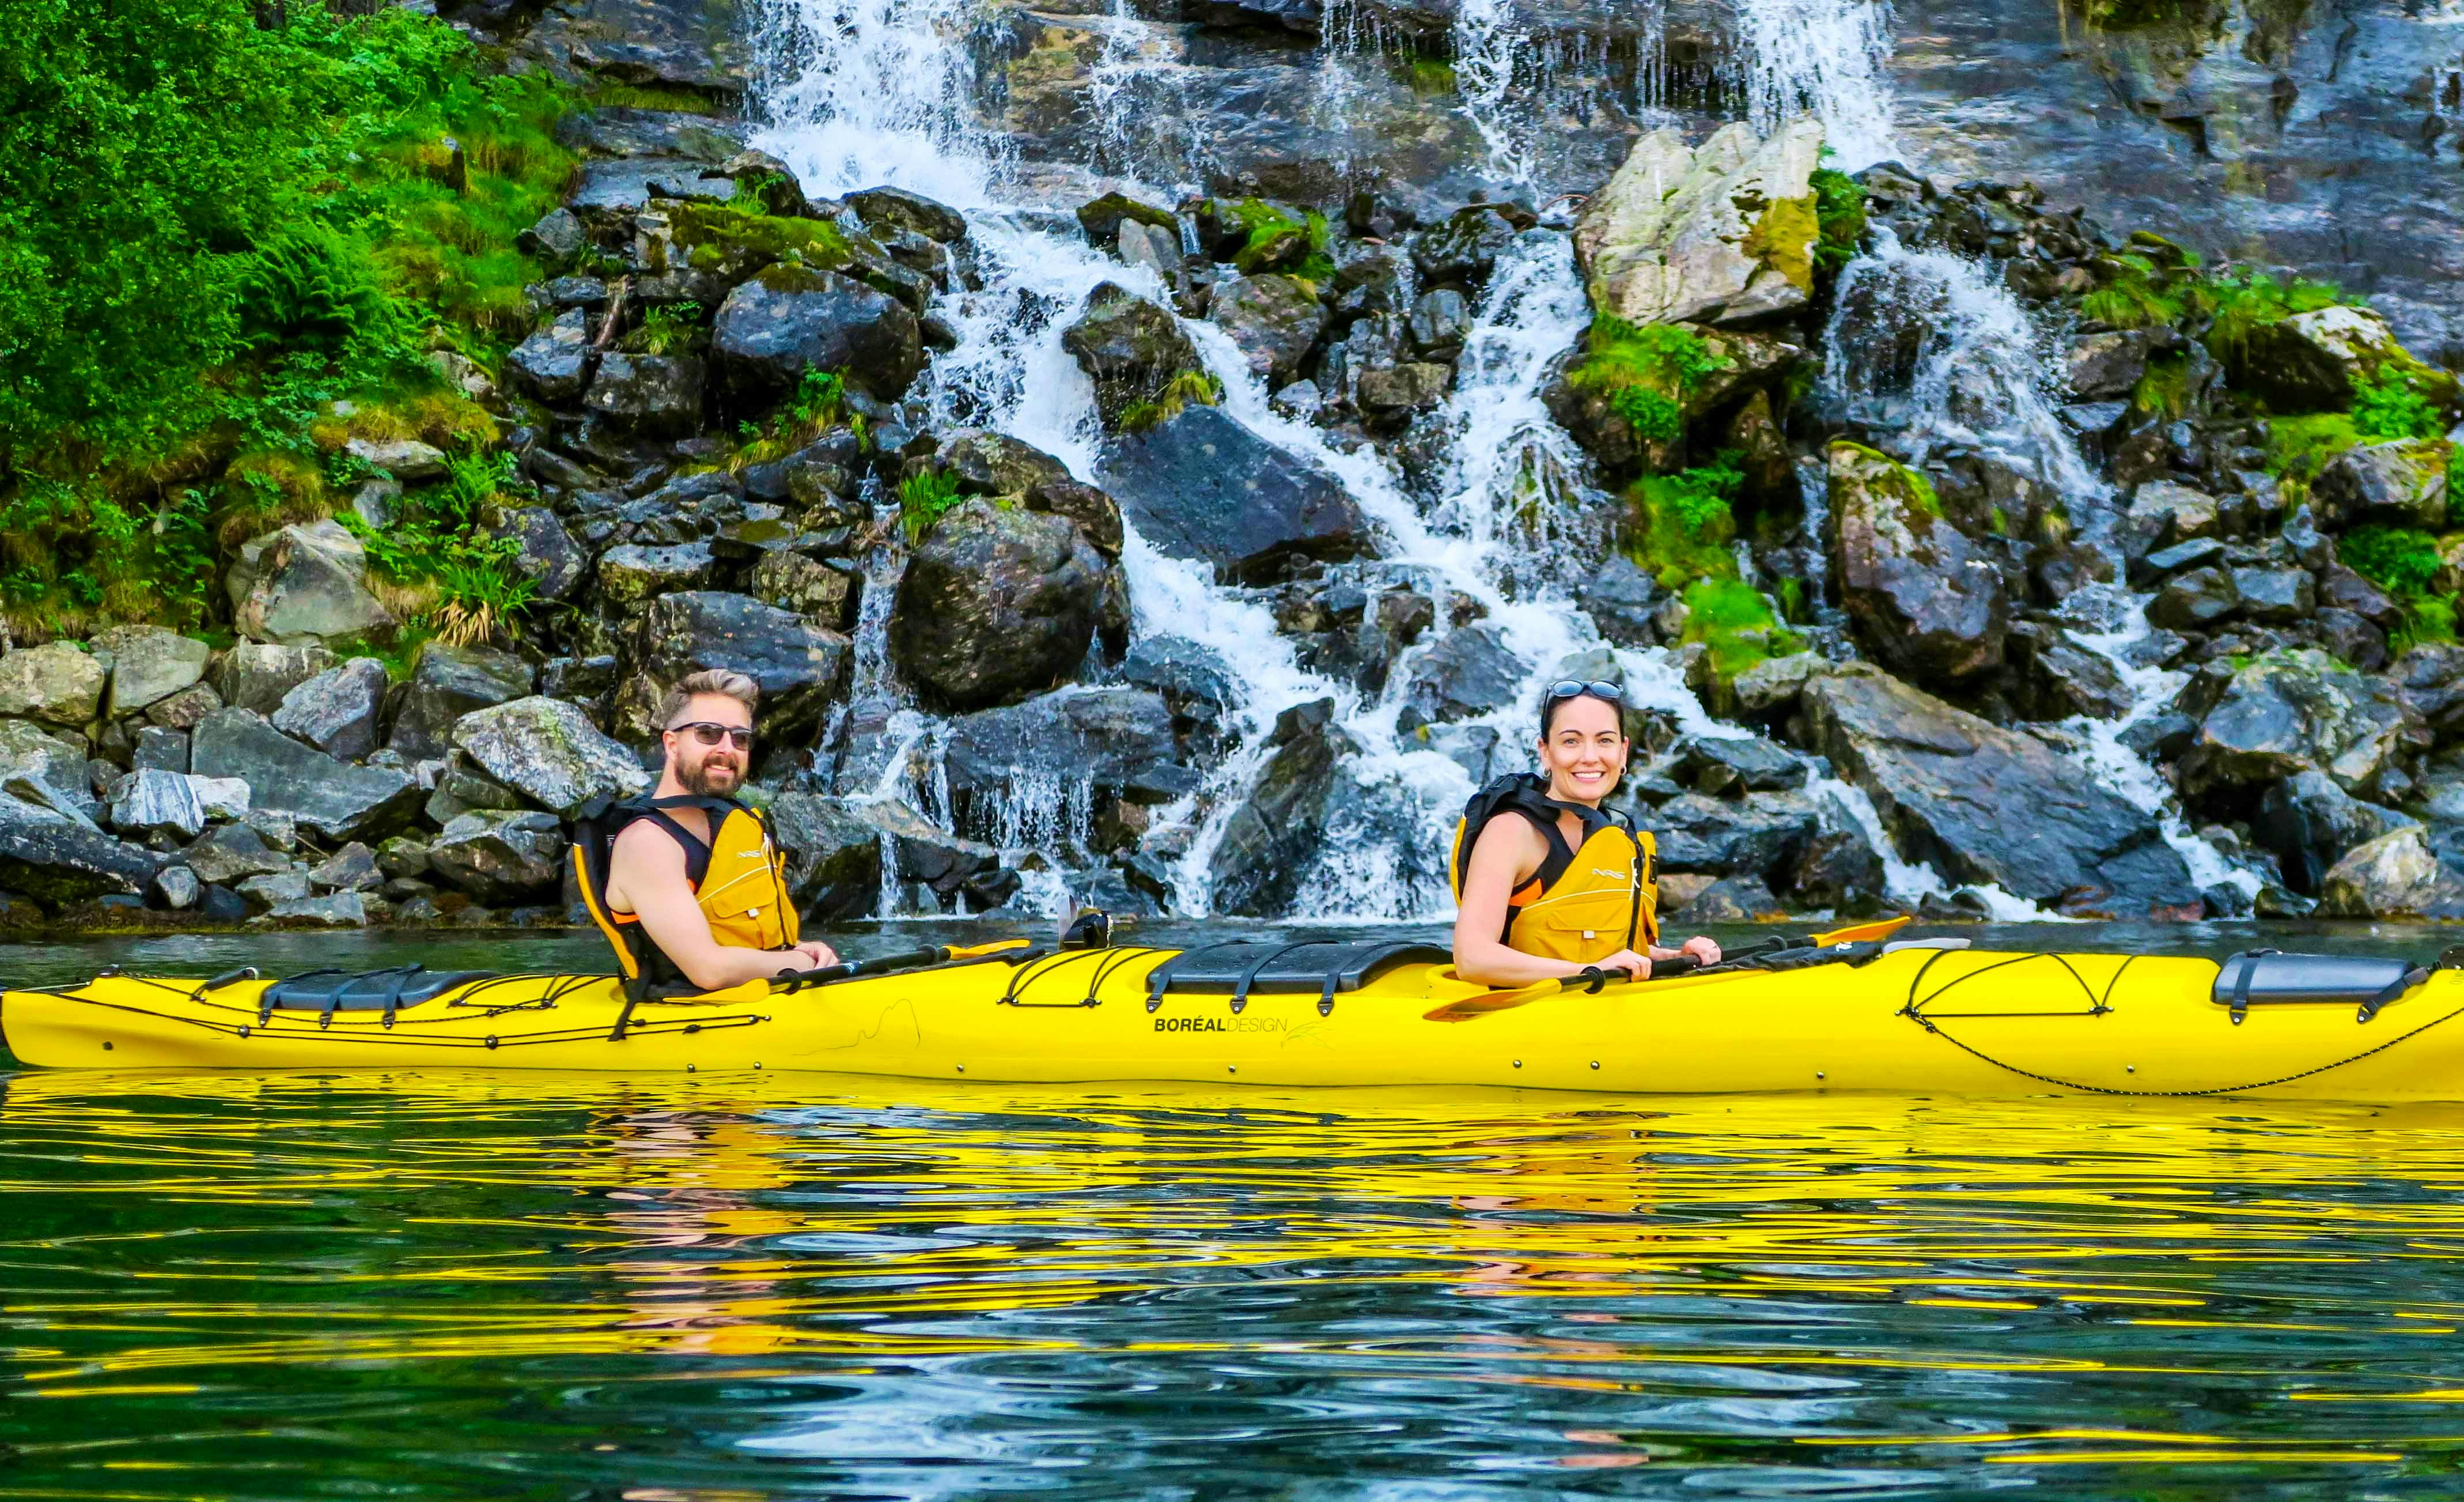 kayaking near waterfalls